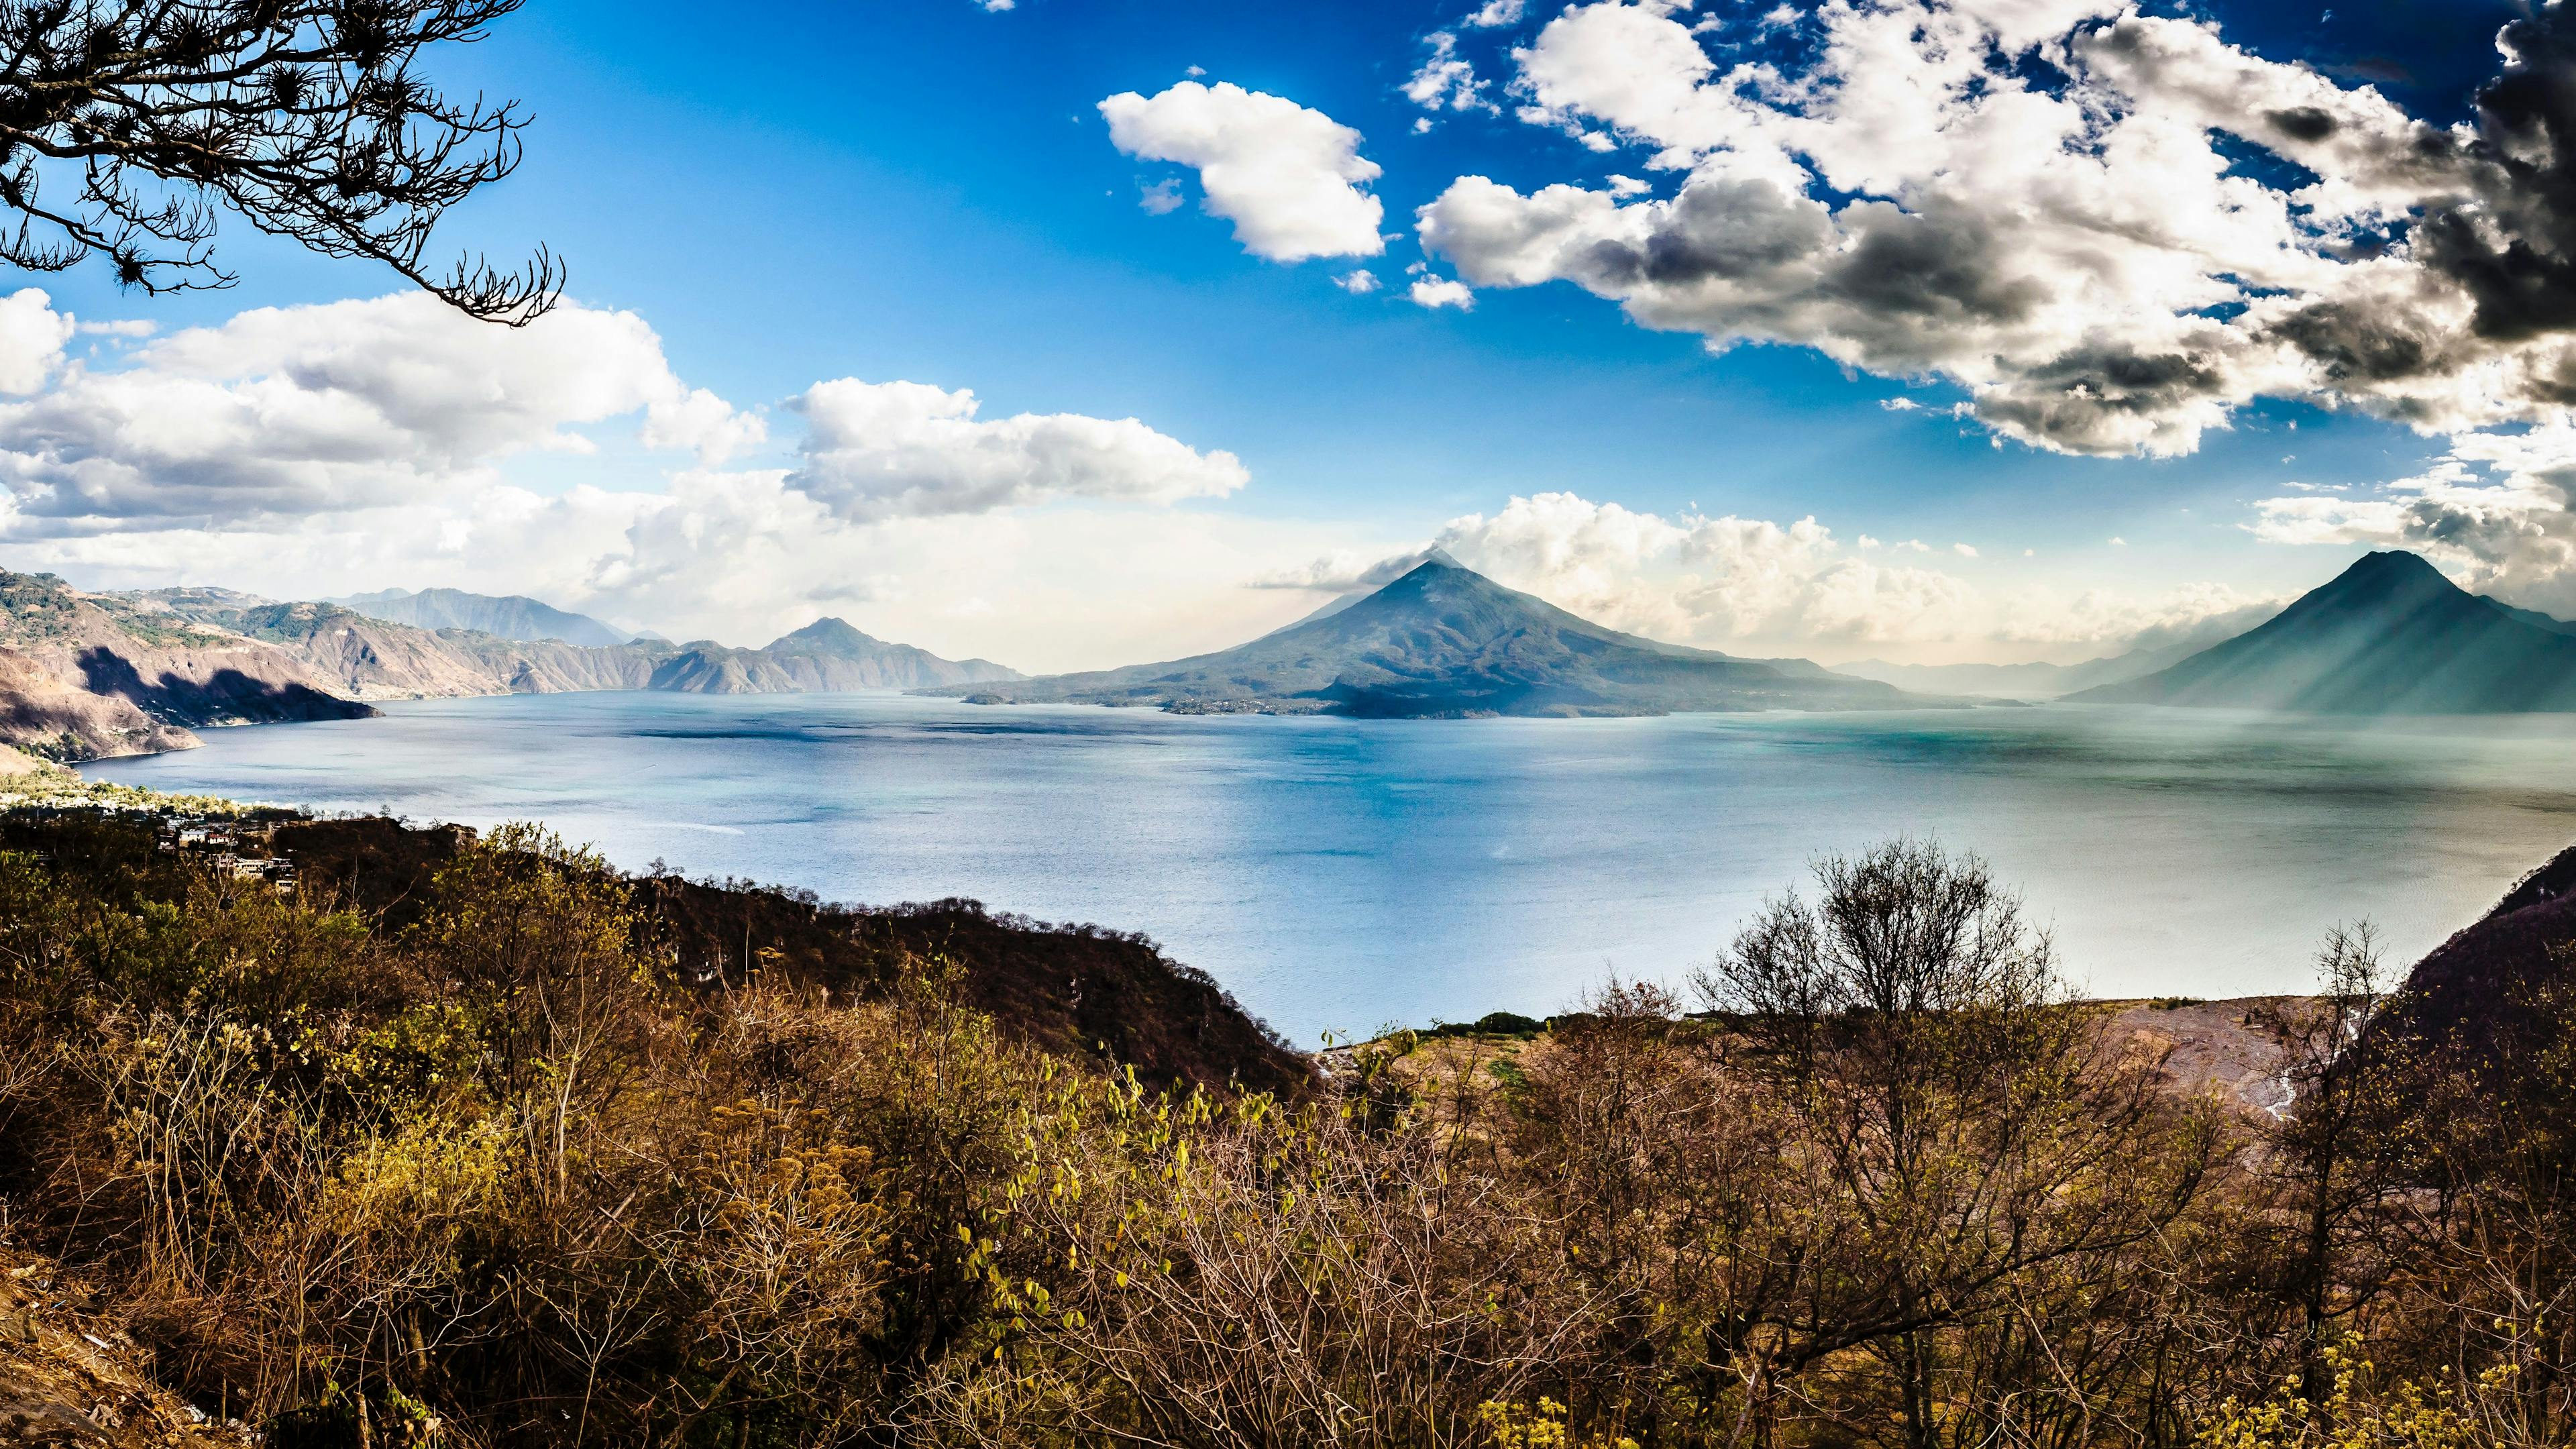 Lake Atitlan in Guatemala.